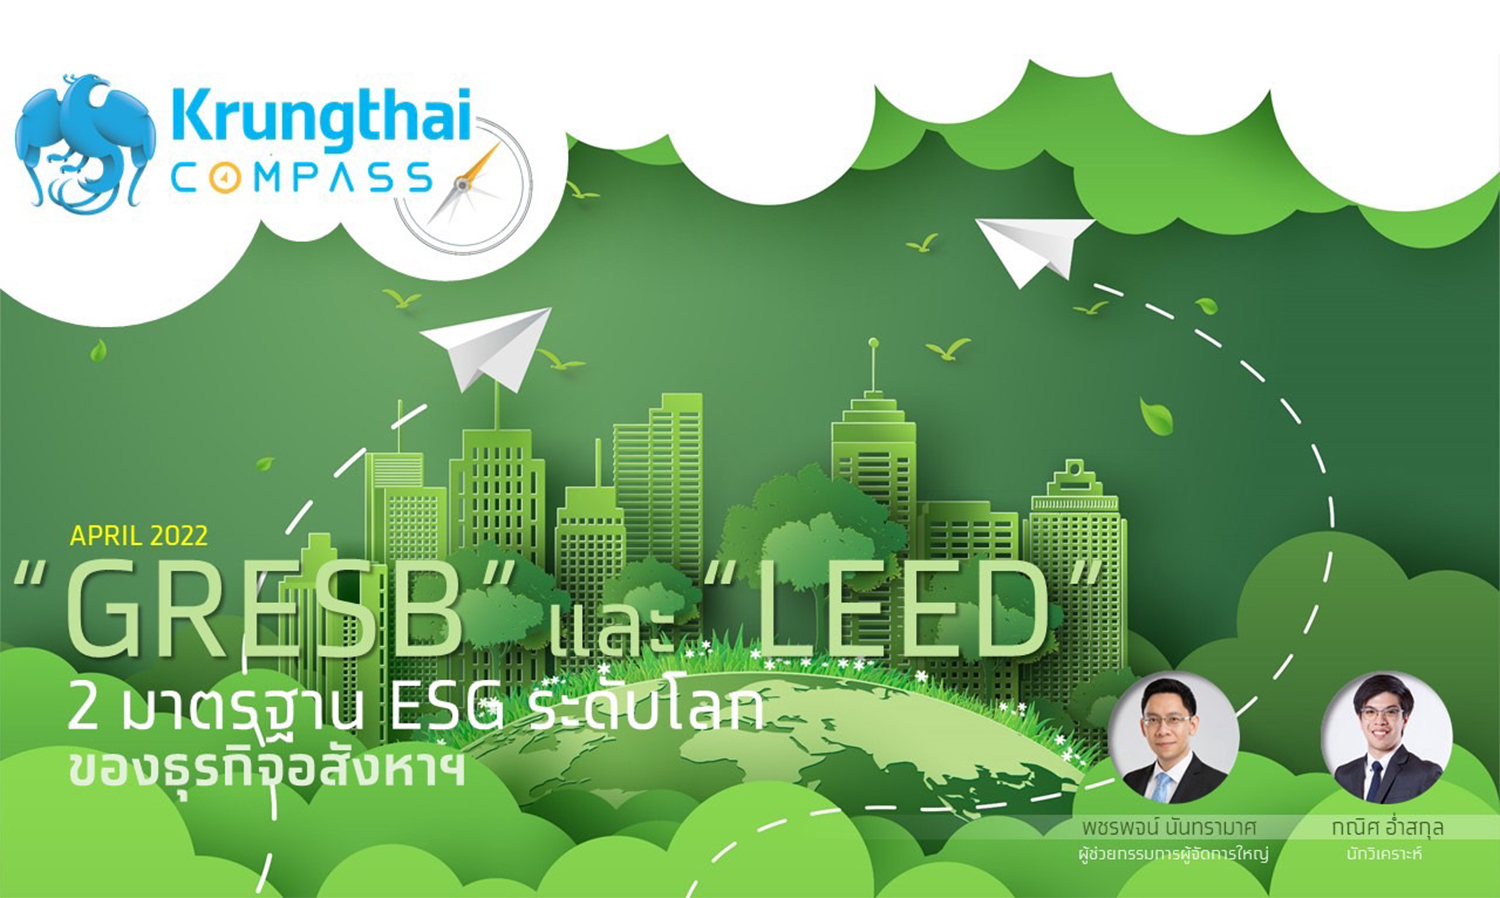 ศูนย์วิจัยกรุงไทยชวนทำความรู้จัก GRESB และ LEED 2 มาตรฐานด้าน ESG ระดับโลกของธุรกิจอสังหาฯ รับกระแส Carbon Neutrality และ Net Zero